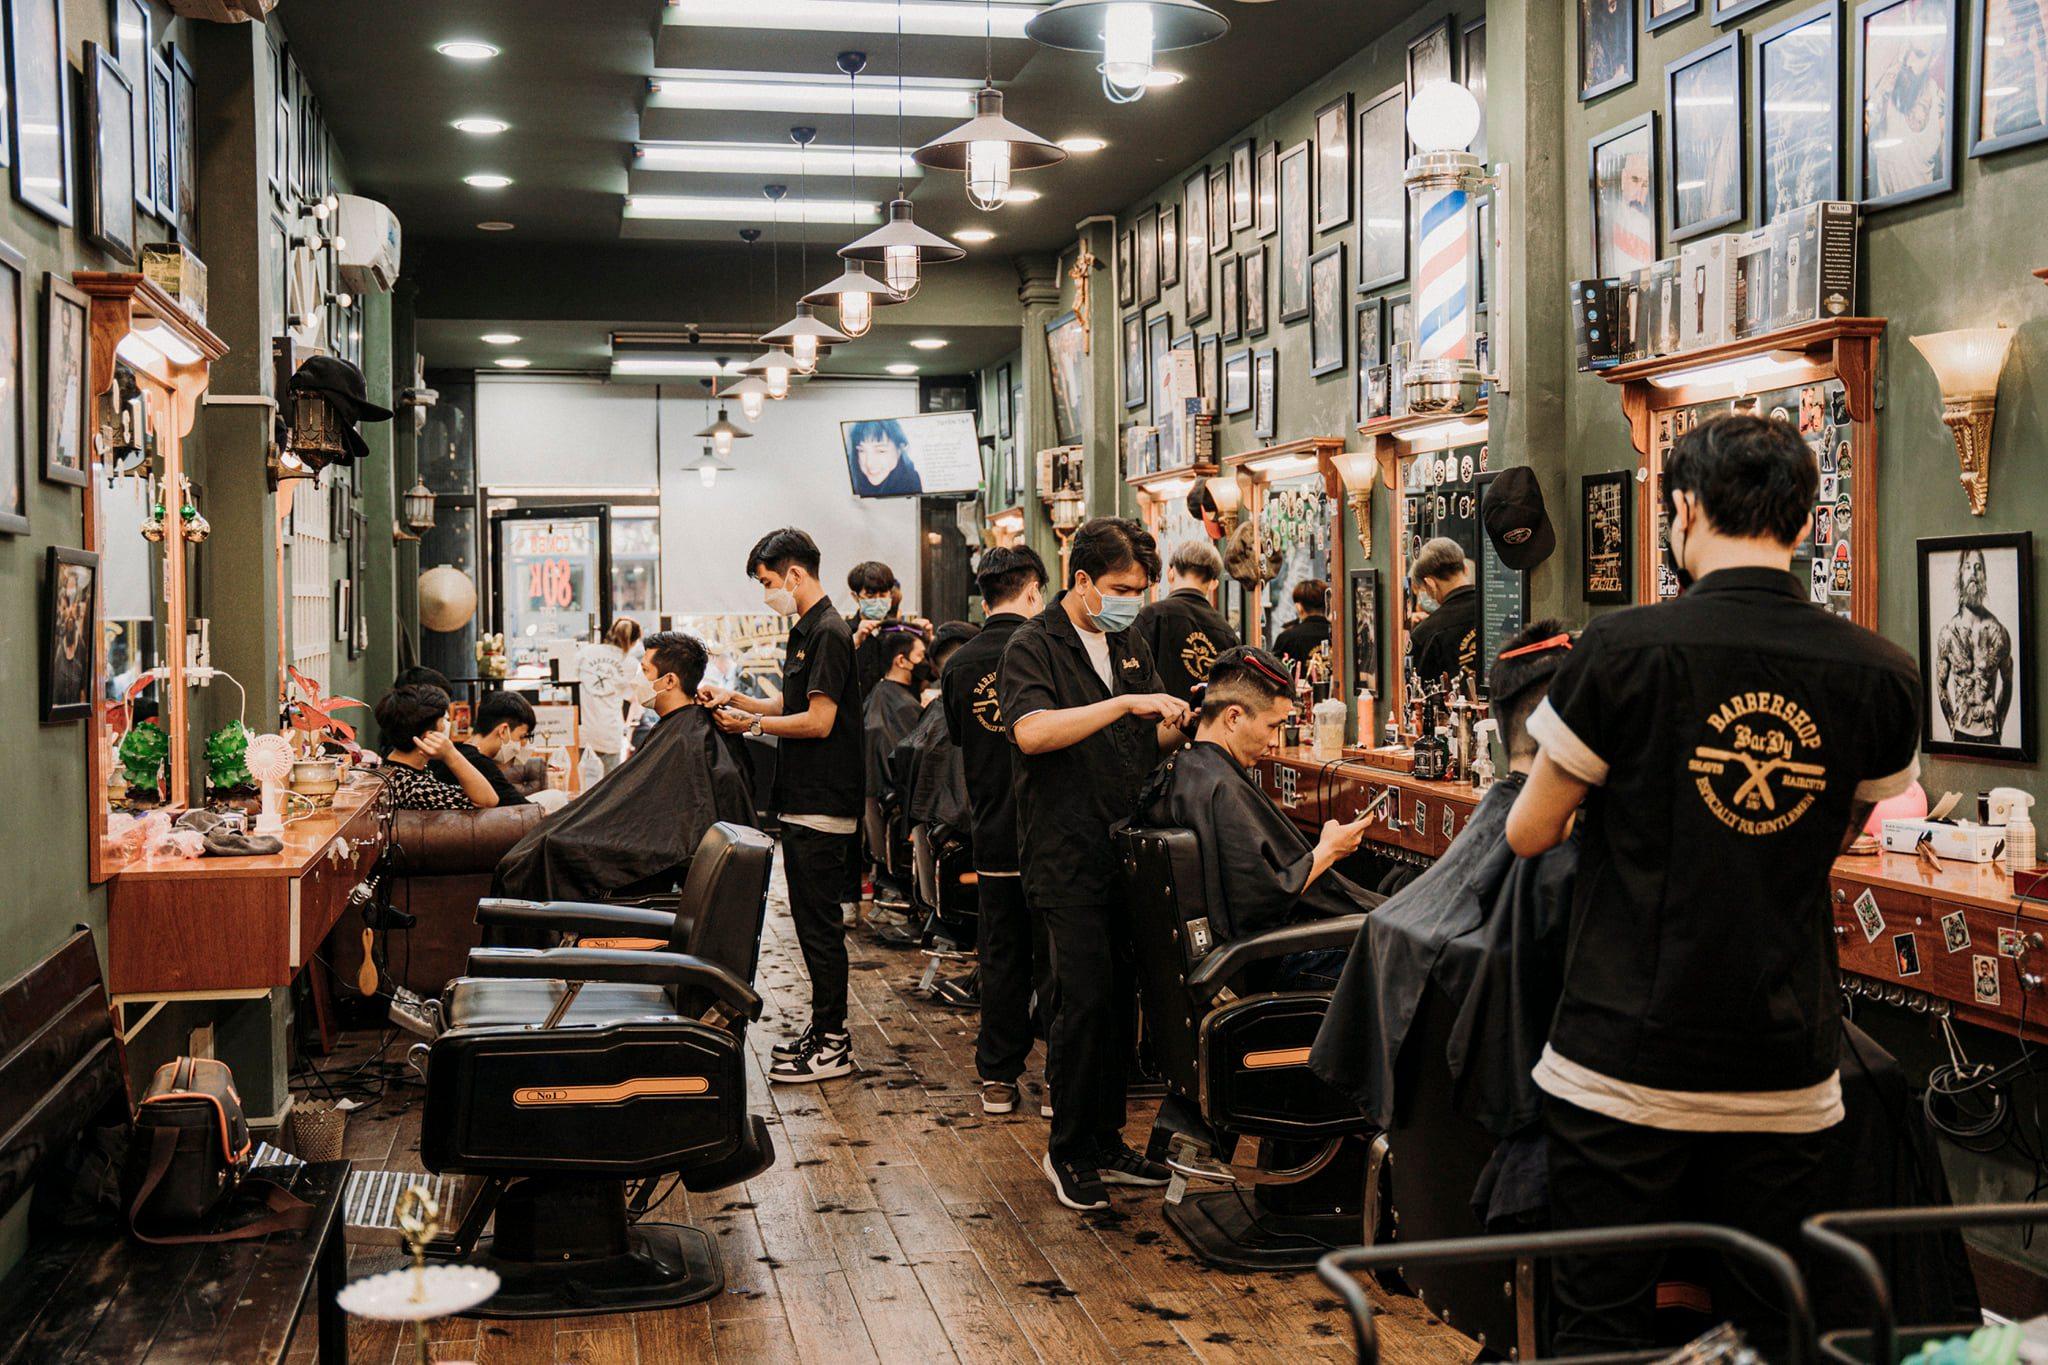 TP.HCM có rất nhiều địa điểm cắt tóc nam, nhưng salon của chúng tôi sẽ làm bạn phải ngạc nhiên với chất lượng dịch vụ và kiểu tóc độc đáo. Hãy xem qua các hình ảnh liên quan để thấy rõ hơn sự chuyên nghiệp của đội ngũ thợ tại salon của chúng tôi.